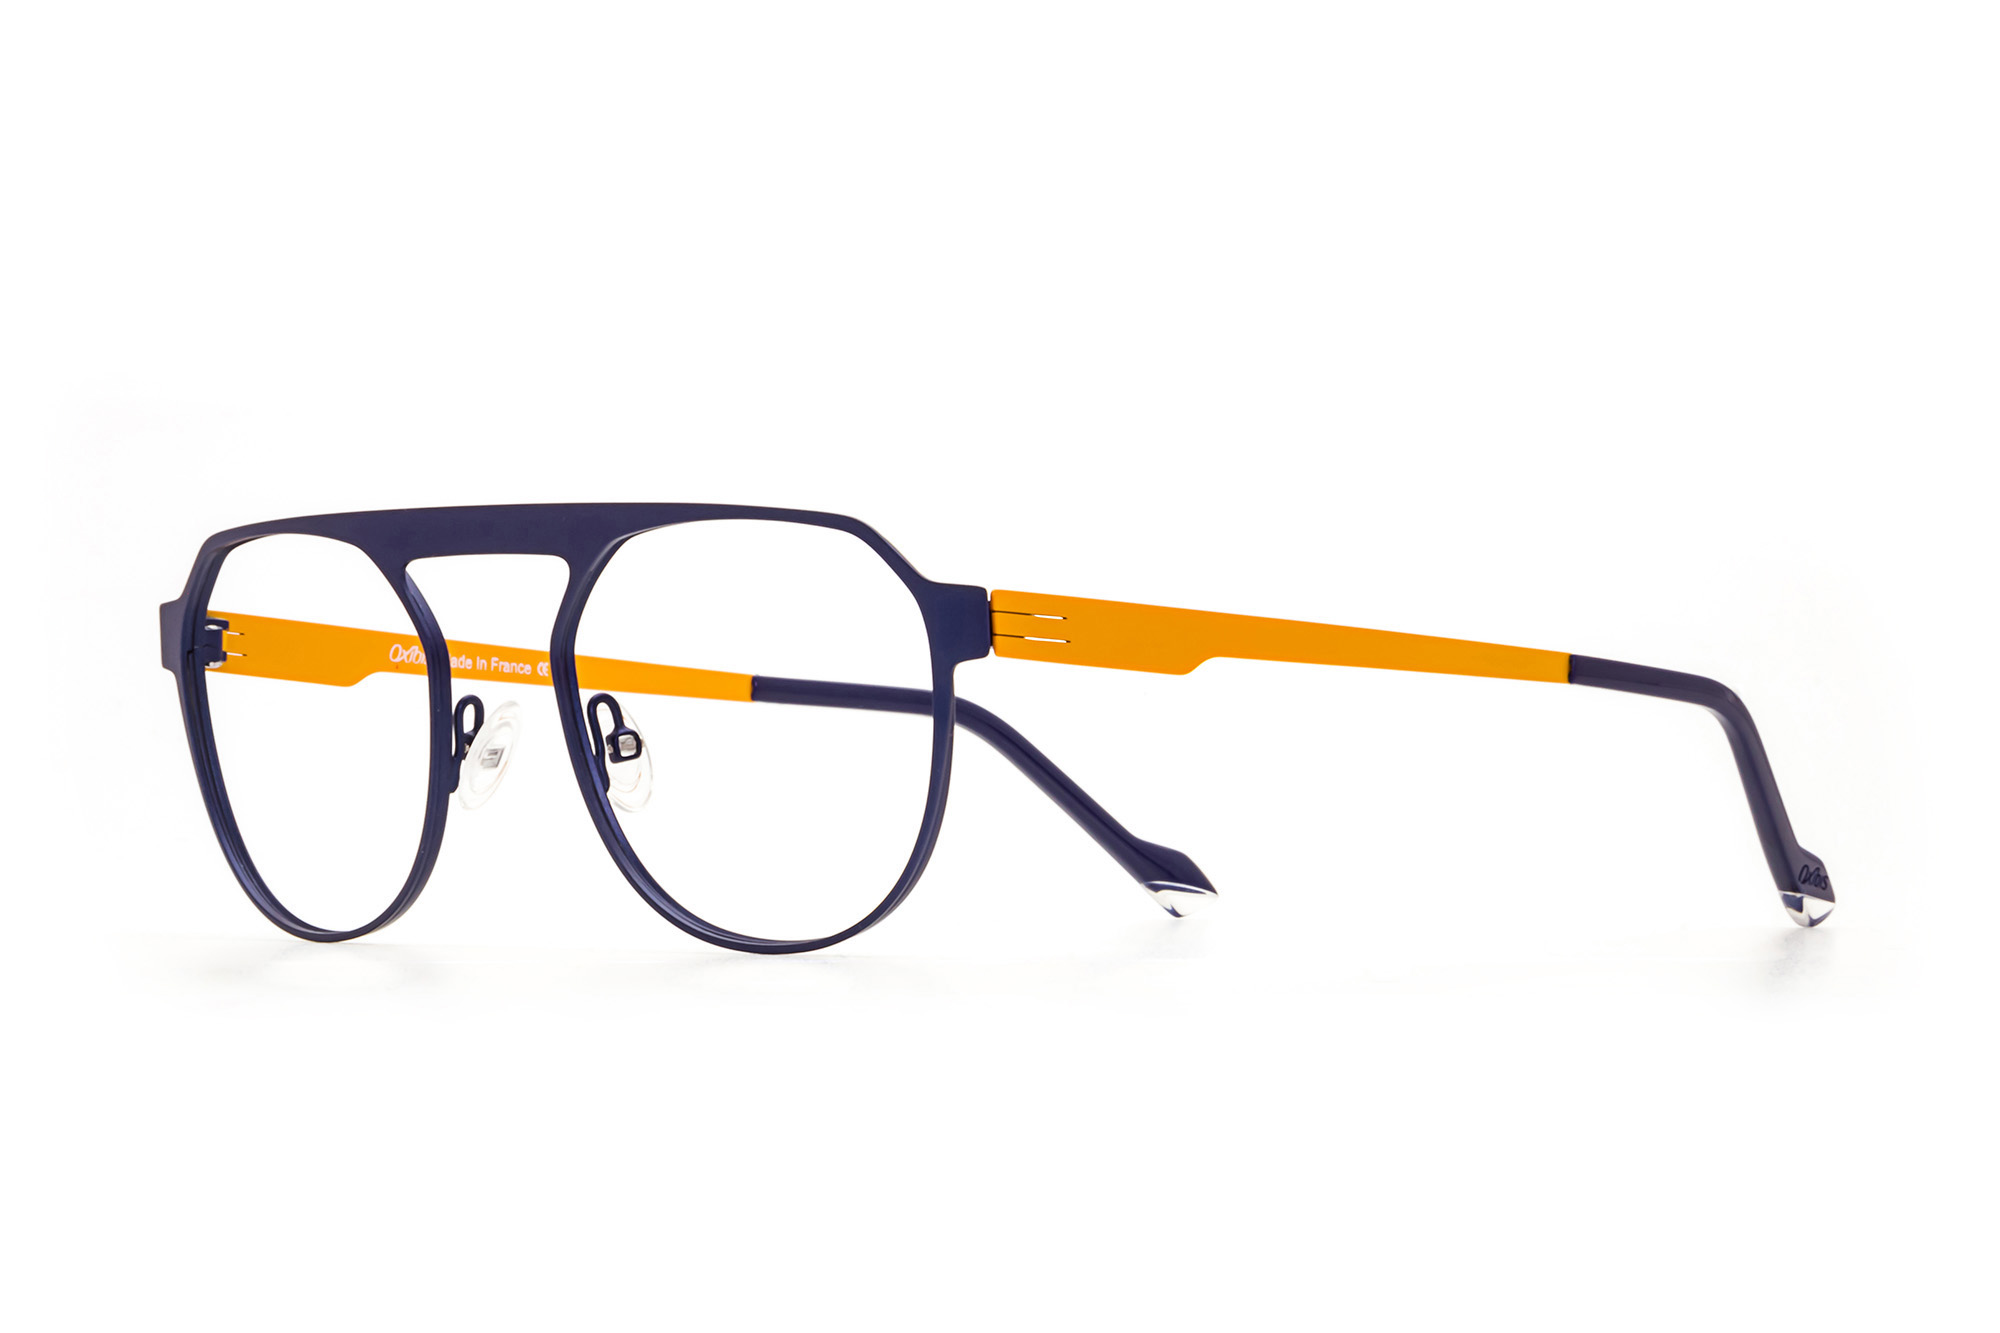 Kullanıma hazır optik tarzda işlenmiş camları ve optik uyumlu çerçevesiyle Oxibis Punchy PN4C5 orta ekartman mavi ve turuncu renkli damla model unisex gözlüğü optisyen veya gözlükçülerin sunacağı numarasız veya numaralı cam özelleştirmeleriyle size en yakın gözlükçüden satın alabilirsiniz.